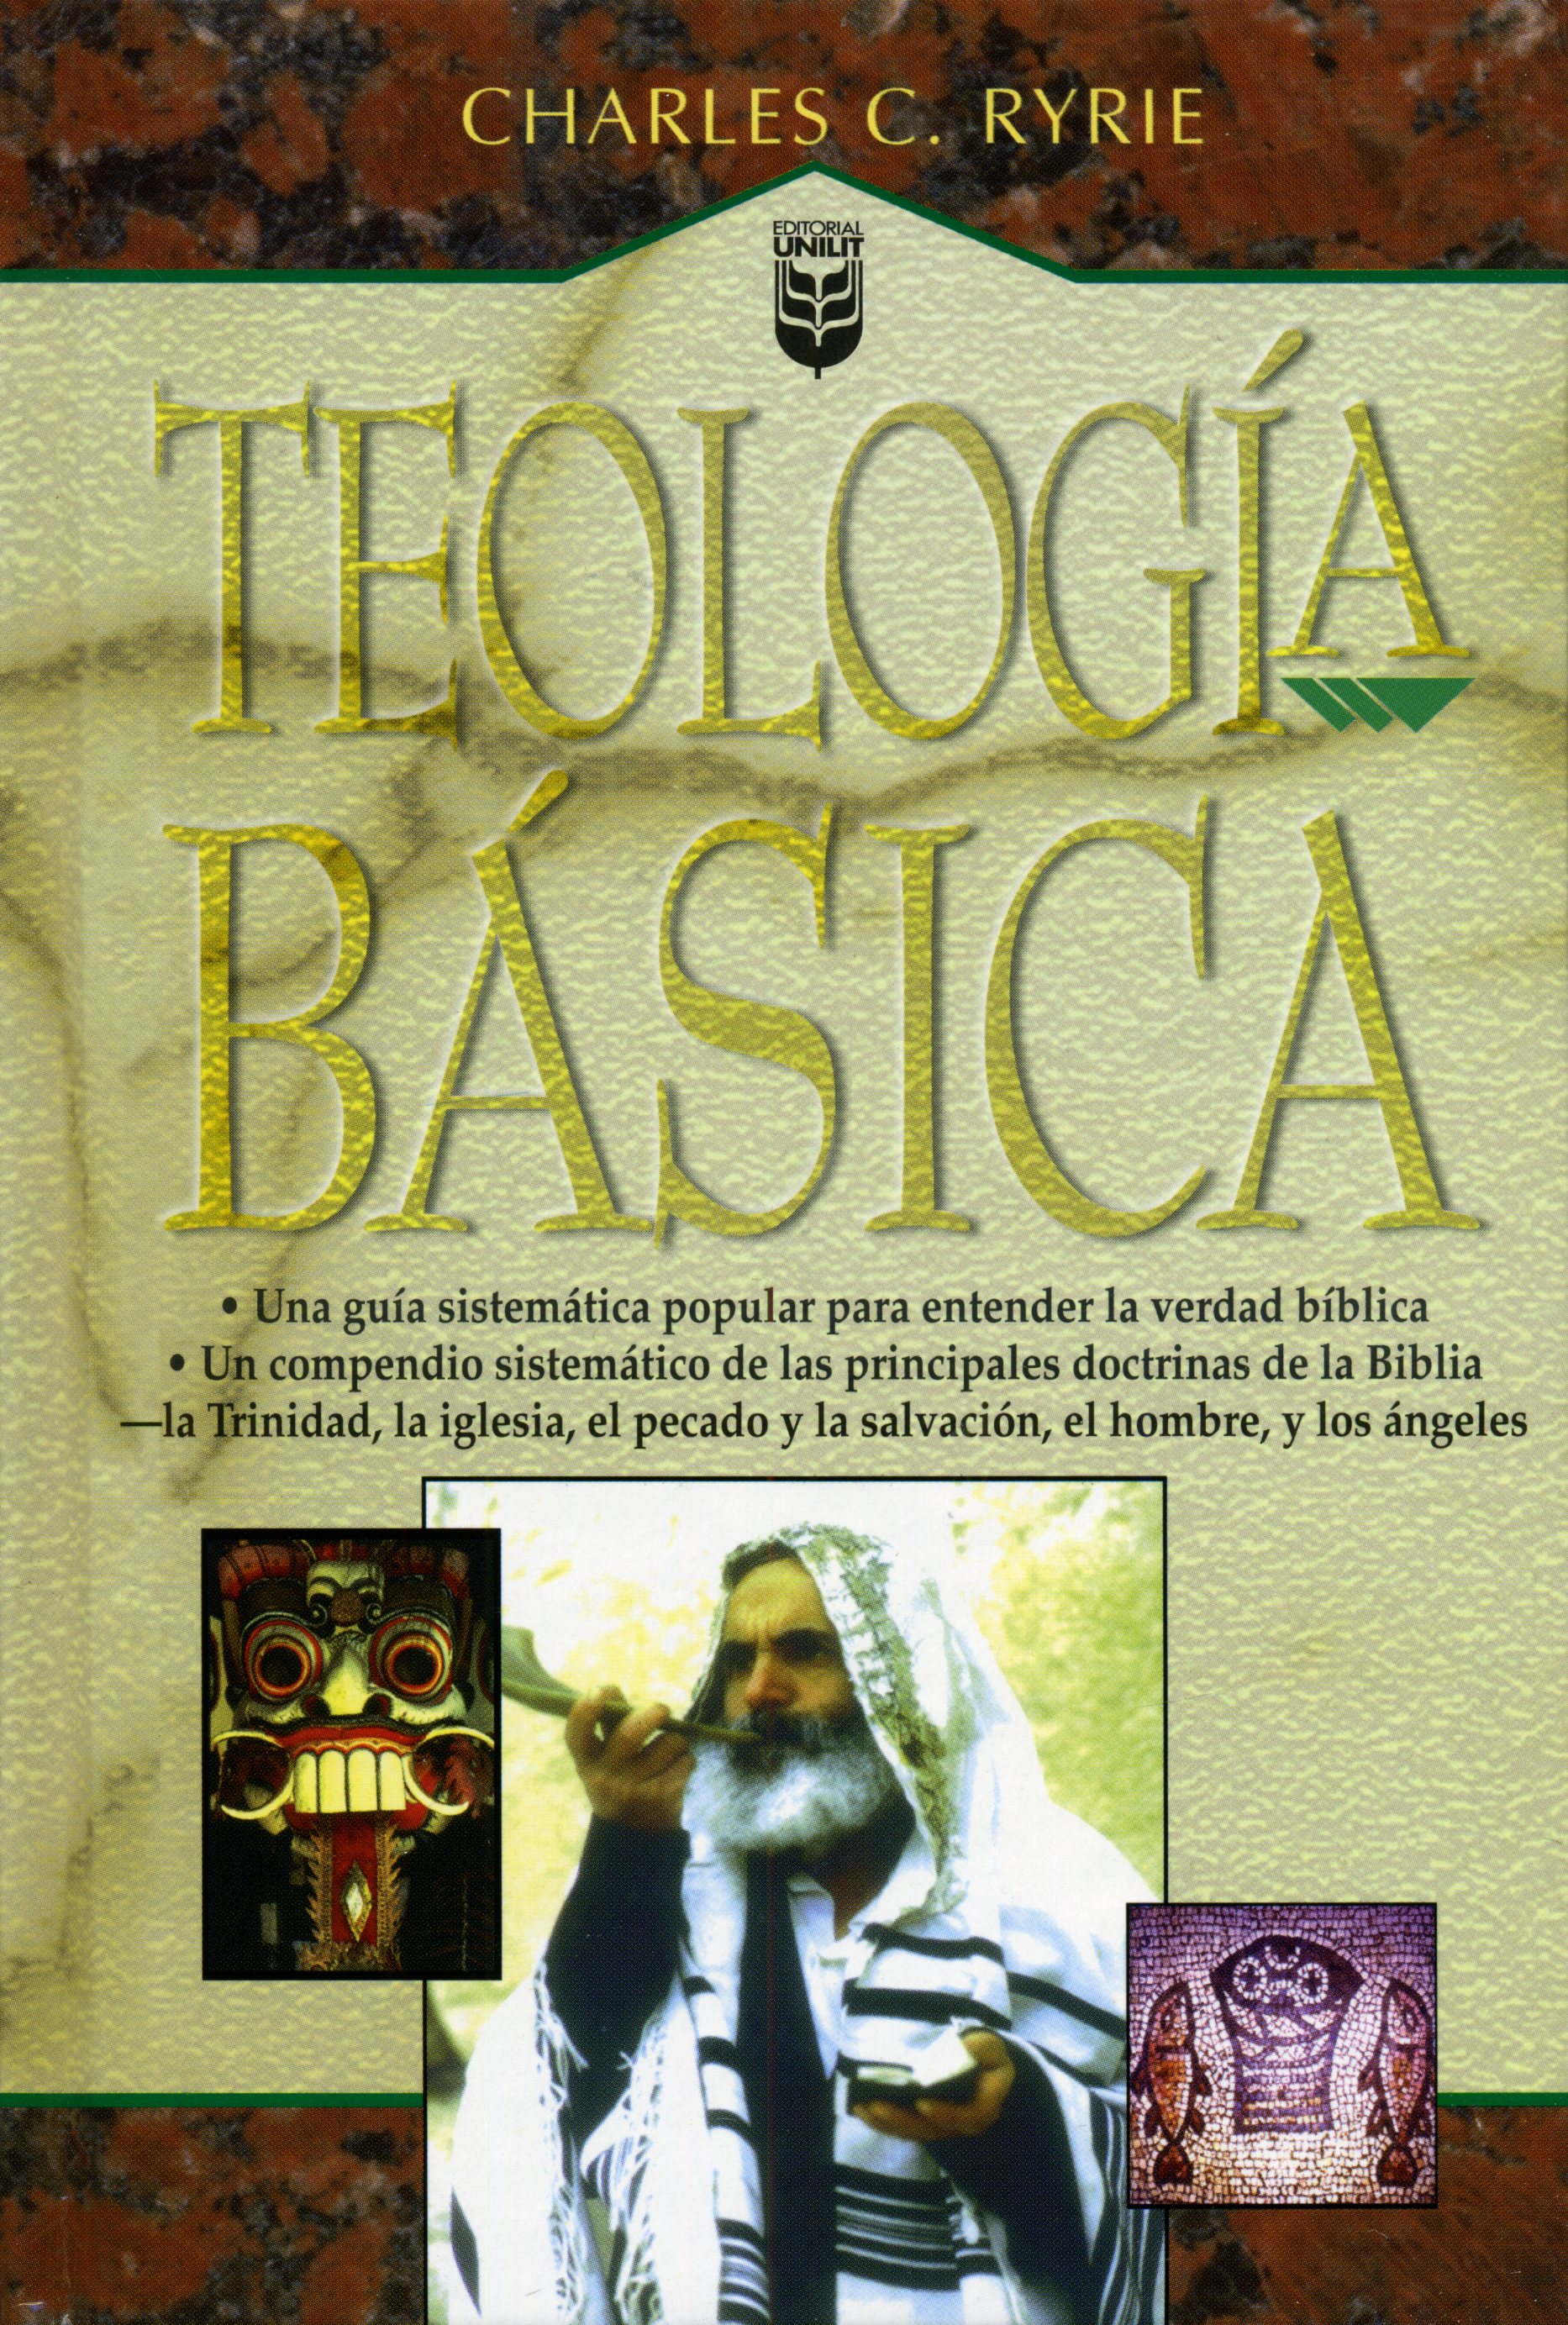 Teología básica